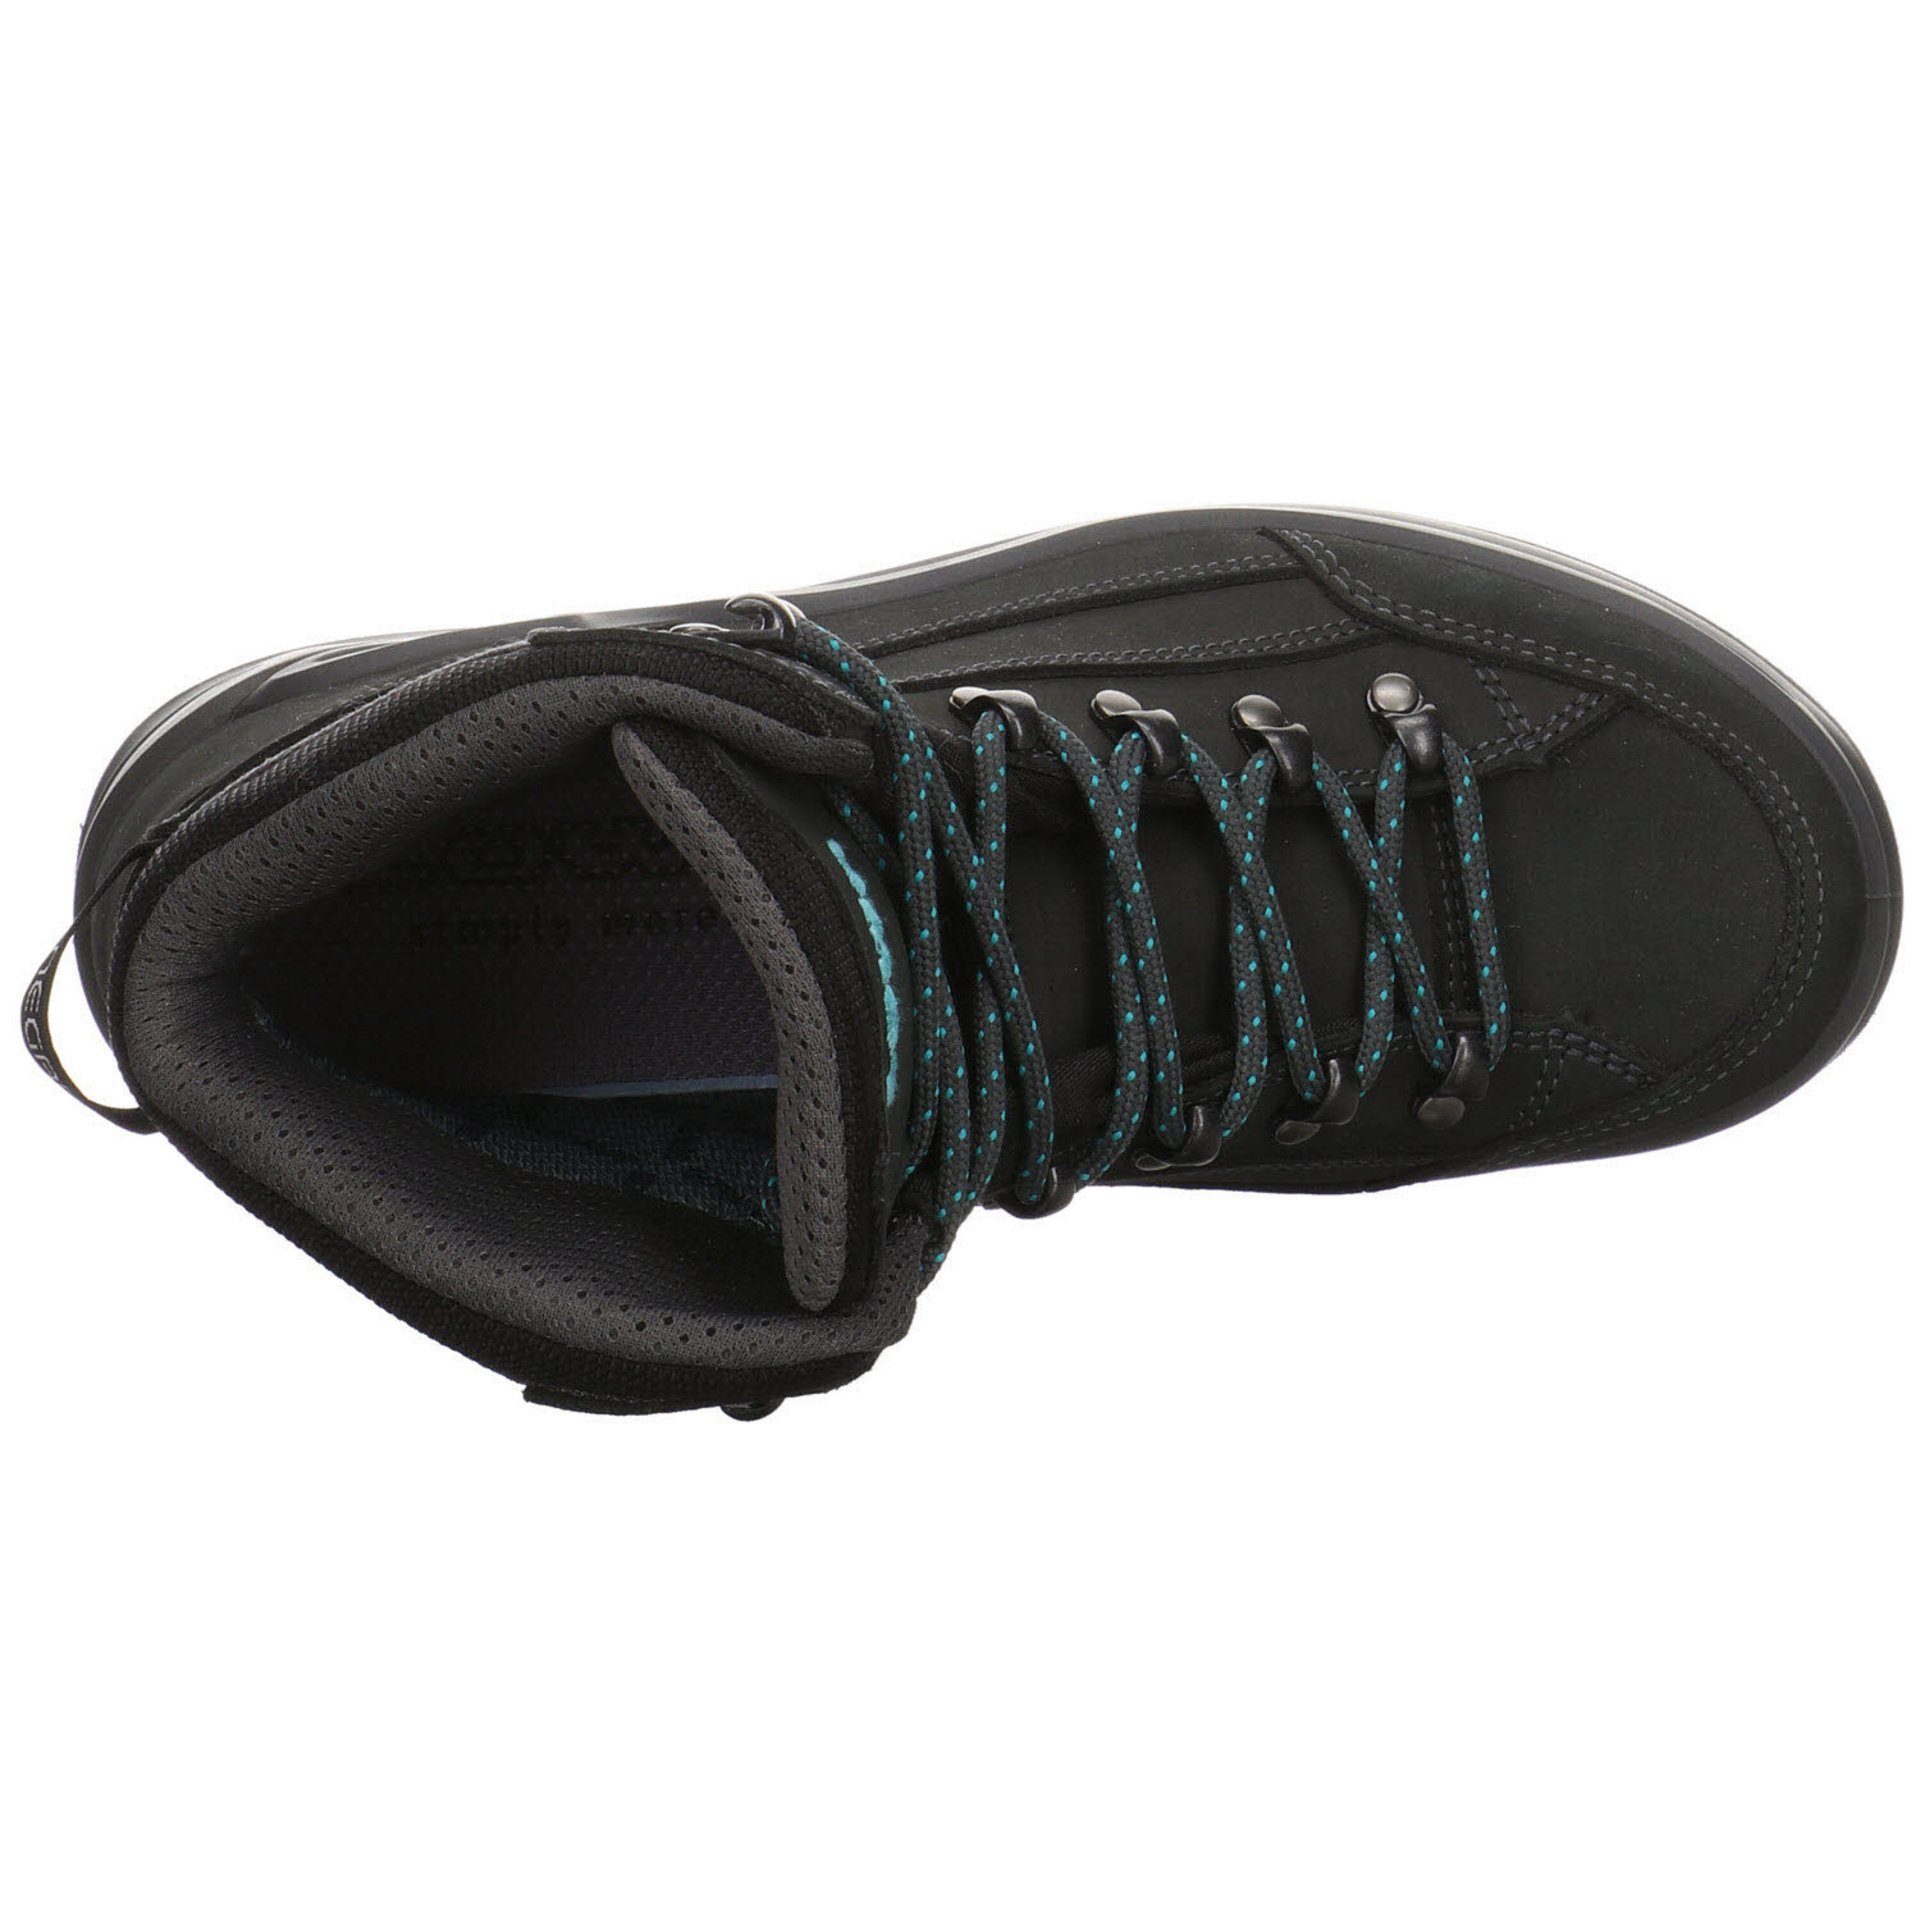 mid Renegade Outdoor Schuhe Damen Outdoorschuh Leder-/Textilkombination GTX Lowa ASPHALT/TÜRKIS Outdoorschuh